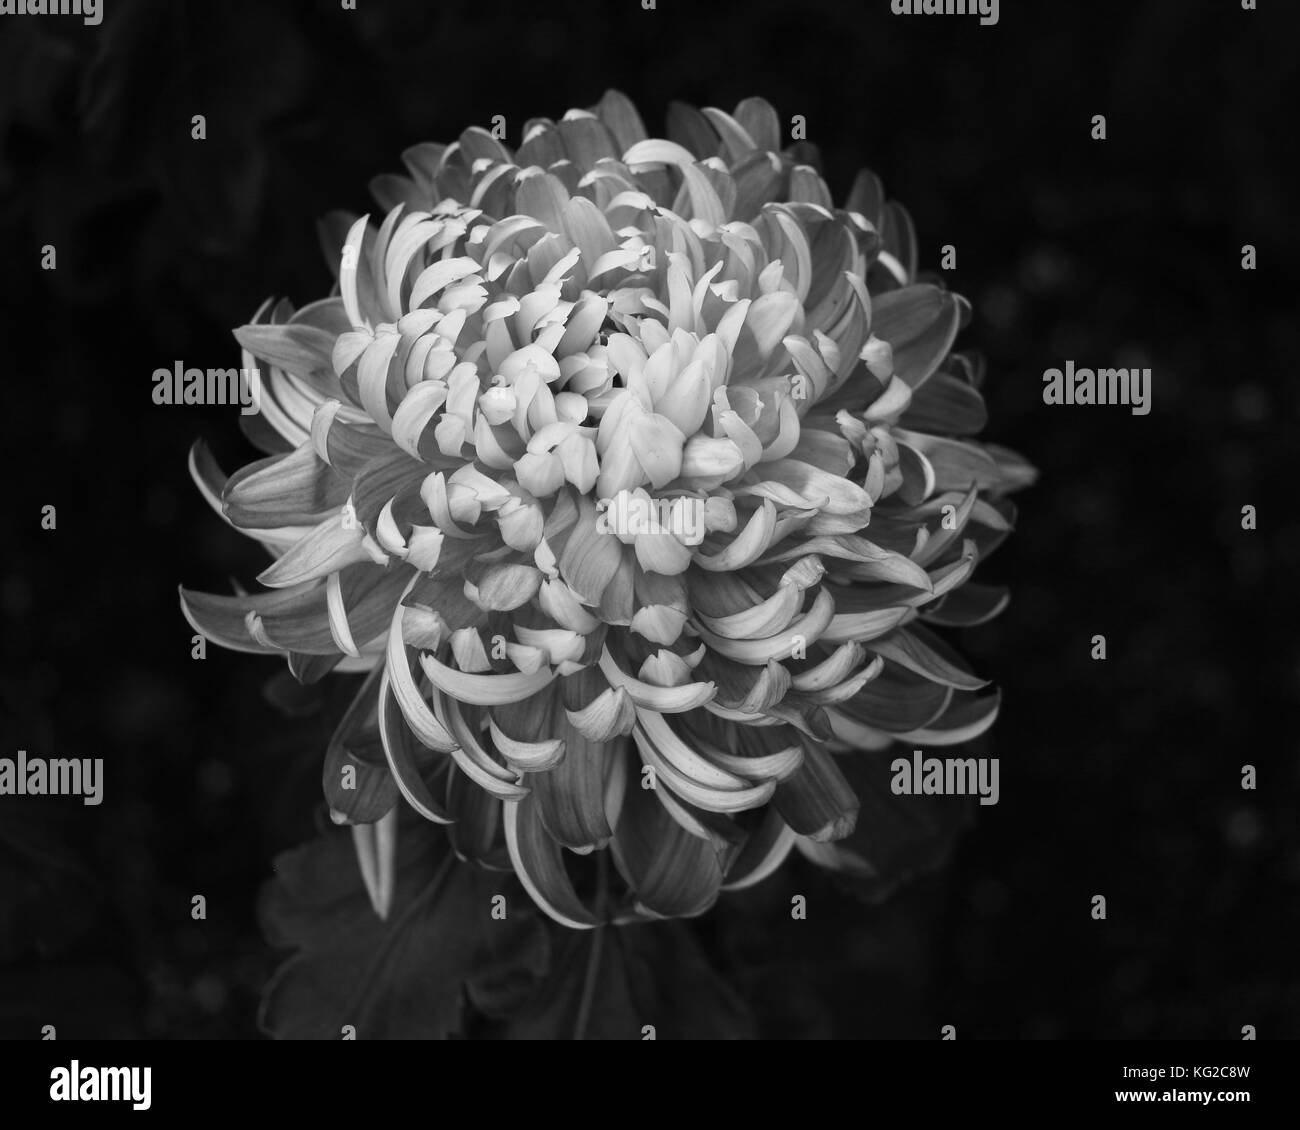 Le fond noir de cette singulière chrysanthemum close up spécimen, crée un contraste frappant avec les pétales en noir et blanc à la mi-floraison Banque D'Images